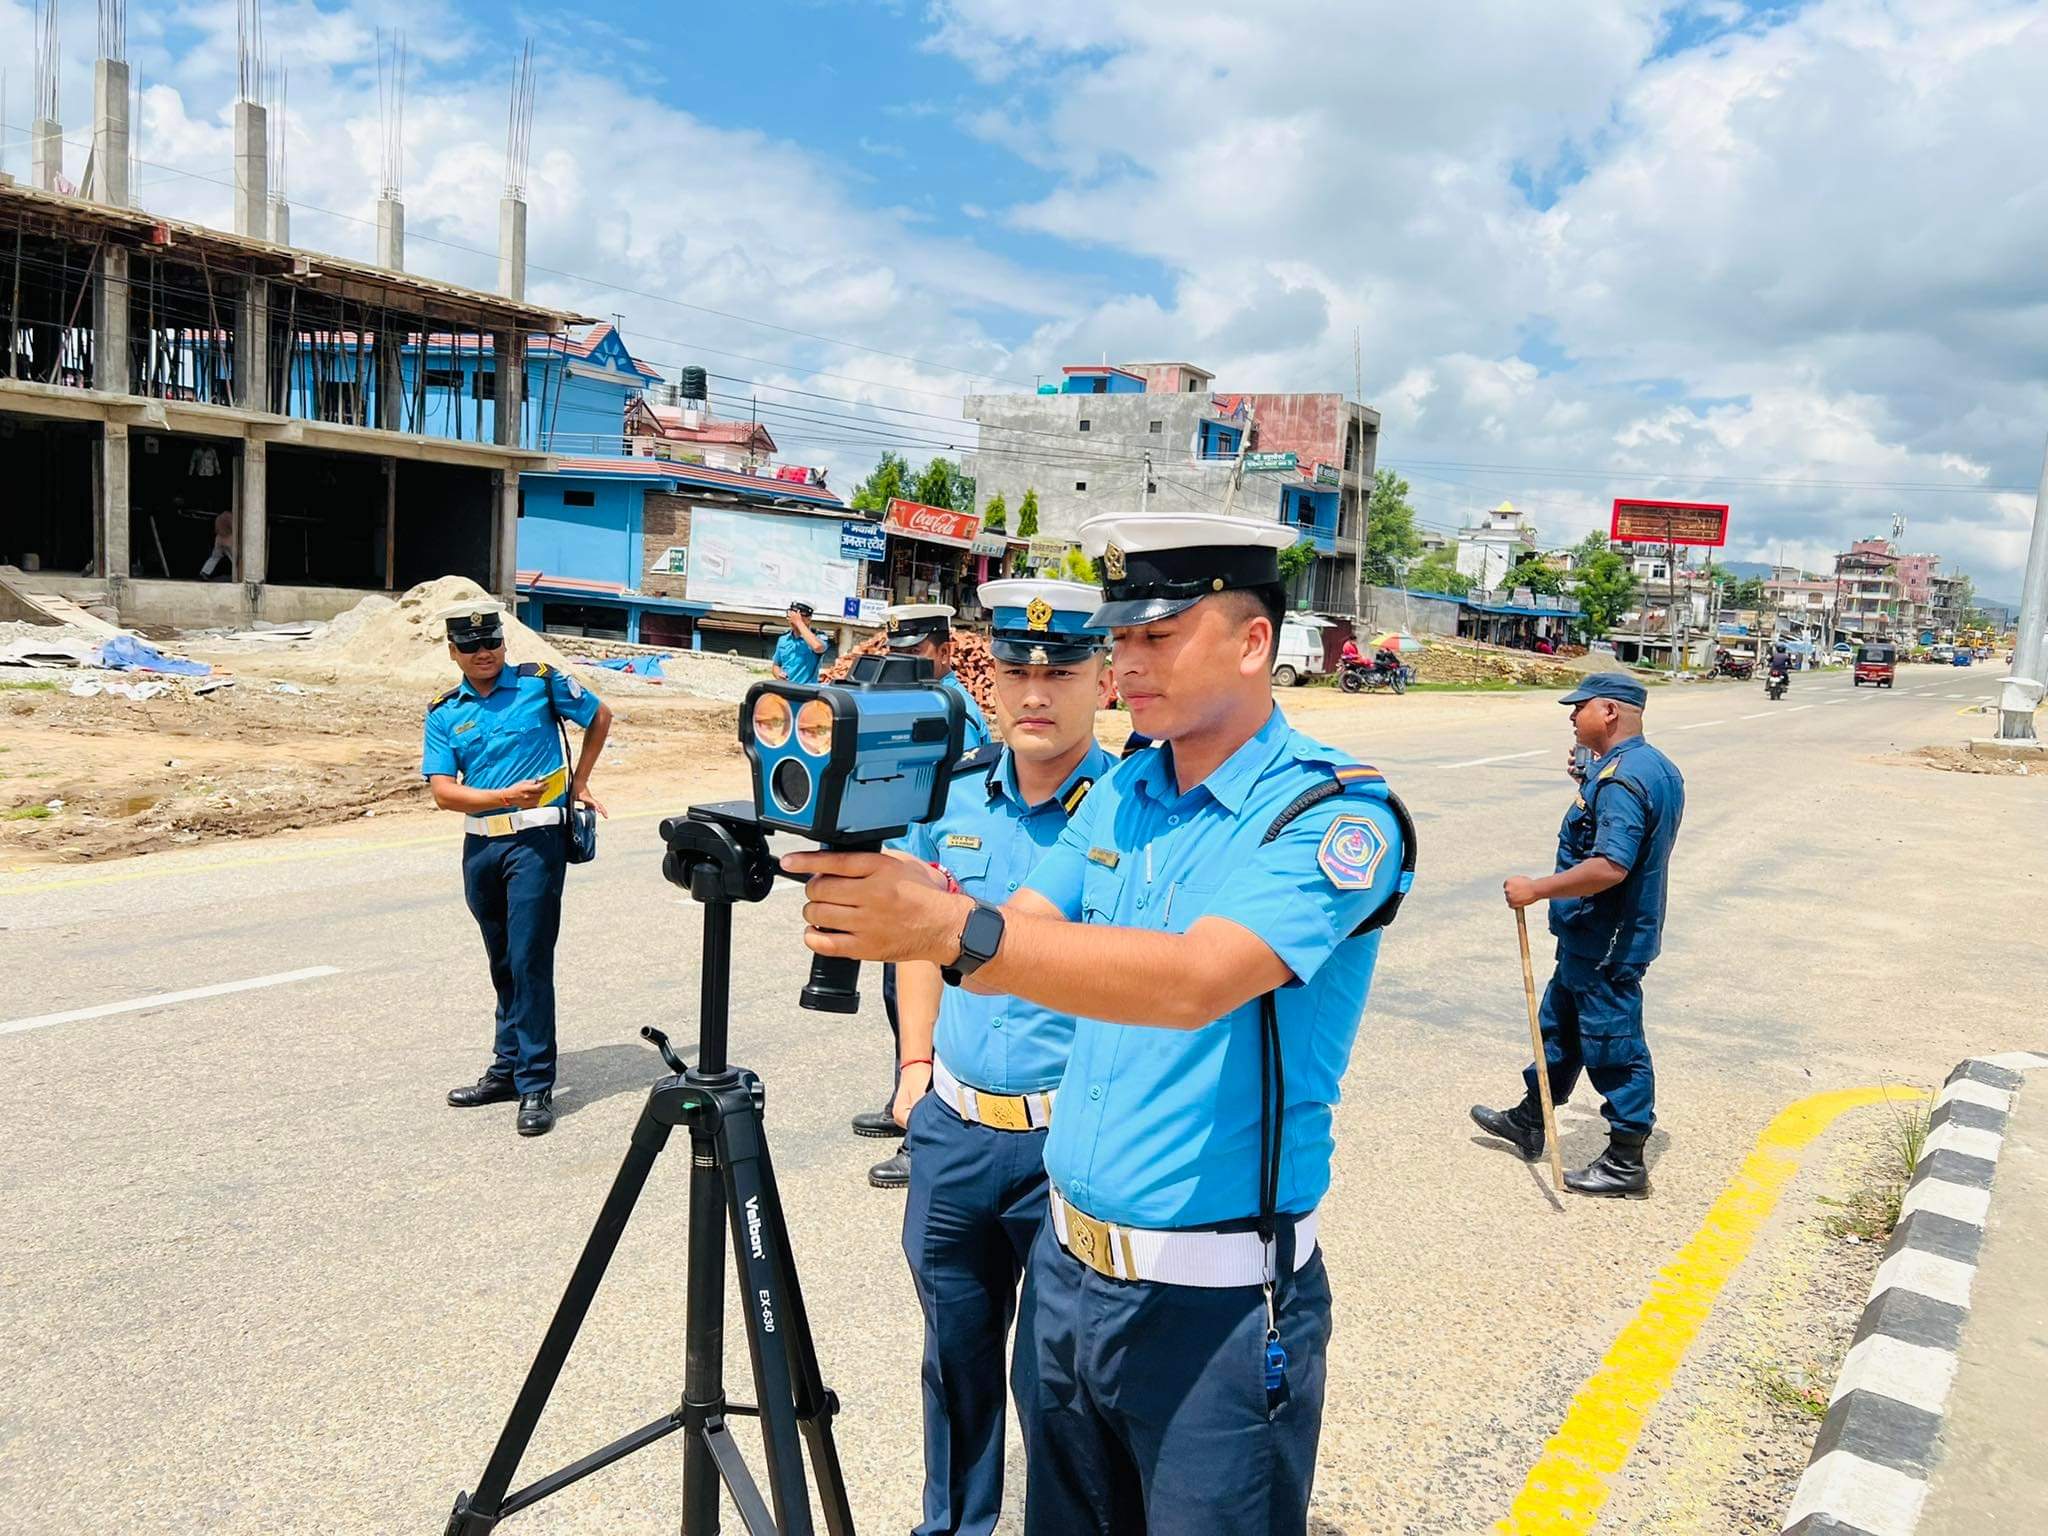 दशै सुरक्षा विशेष : यात्रु सहायता कक्षदेखि राजमार्ग सुरक्षासम्म